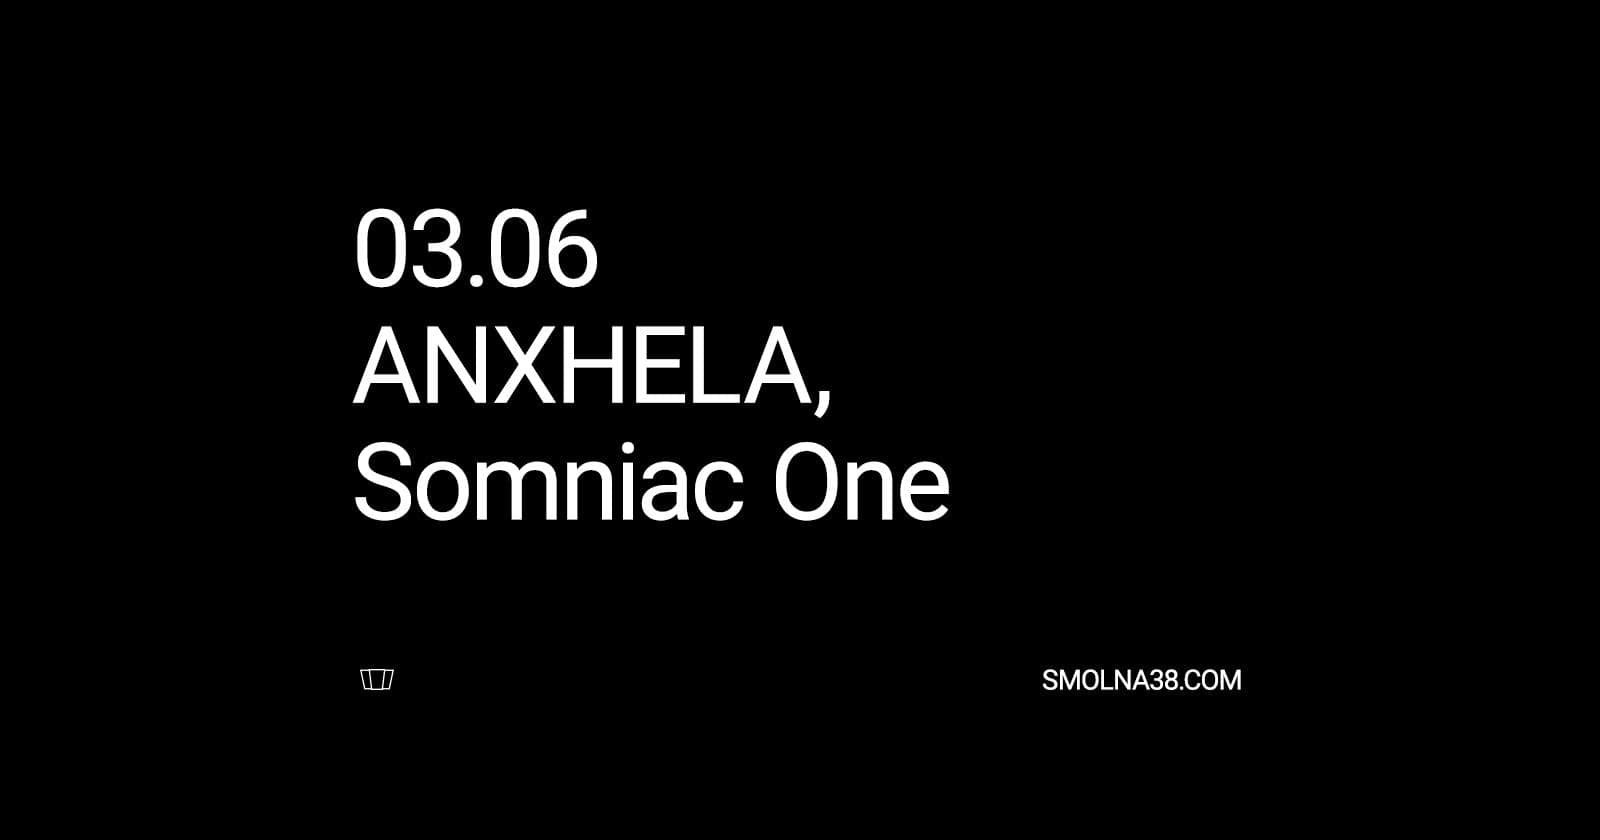 Smolna: ANXHELA, Somniac One